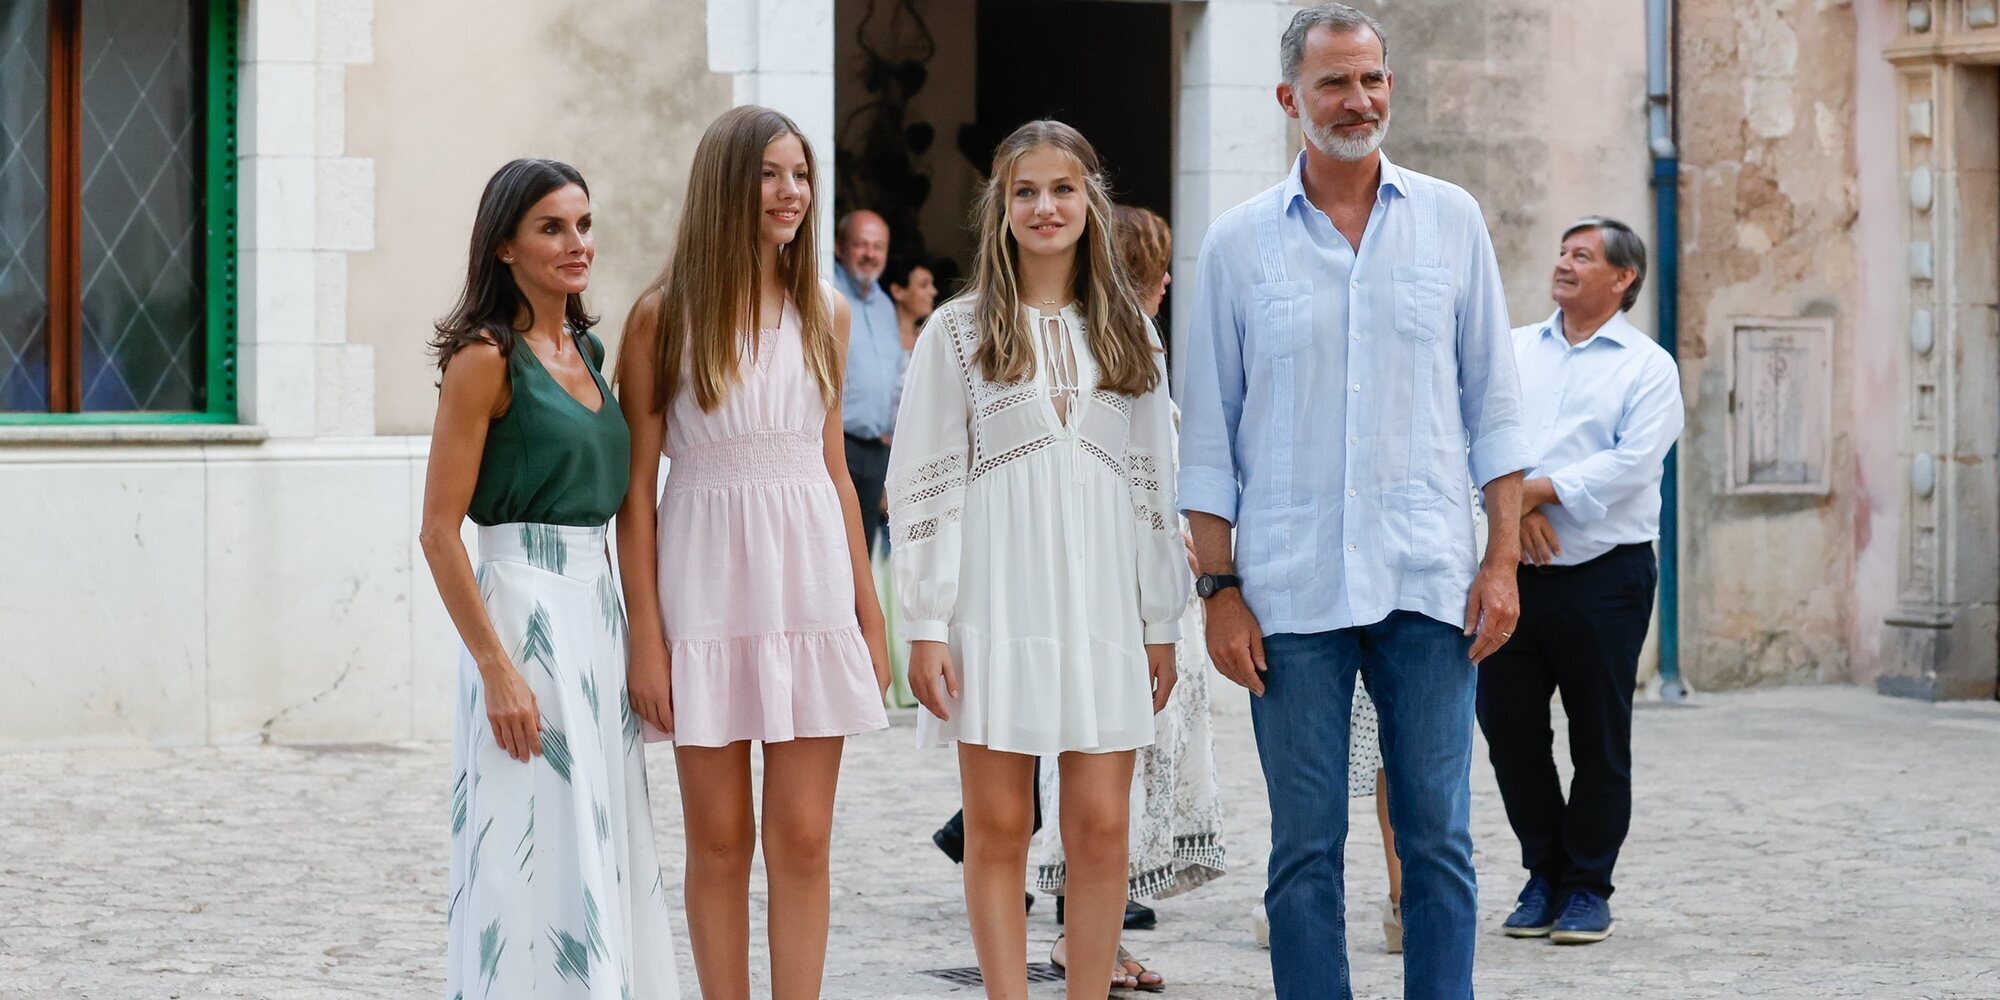 Los detalles de la visita de la Familia Real a Valldemossa: el colgante de la Princesa Leonor, abrazos y "tenemos una edad"